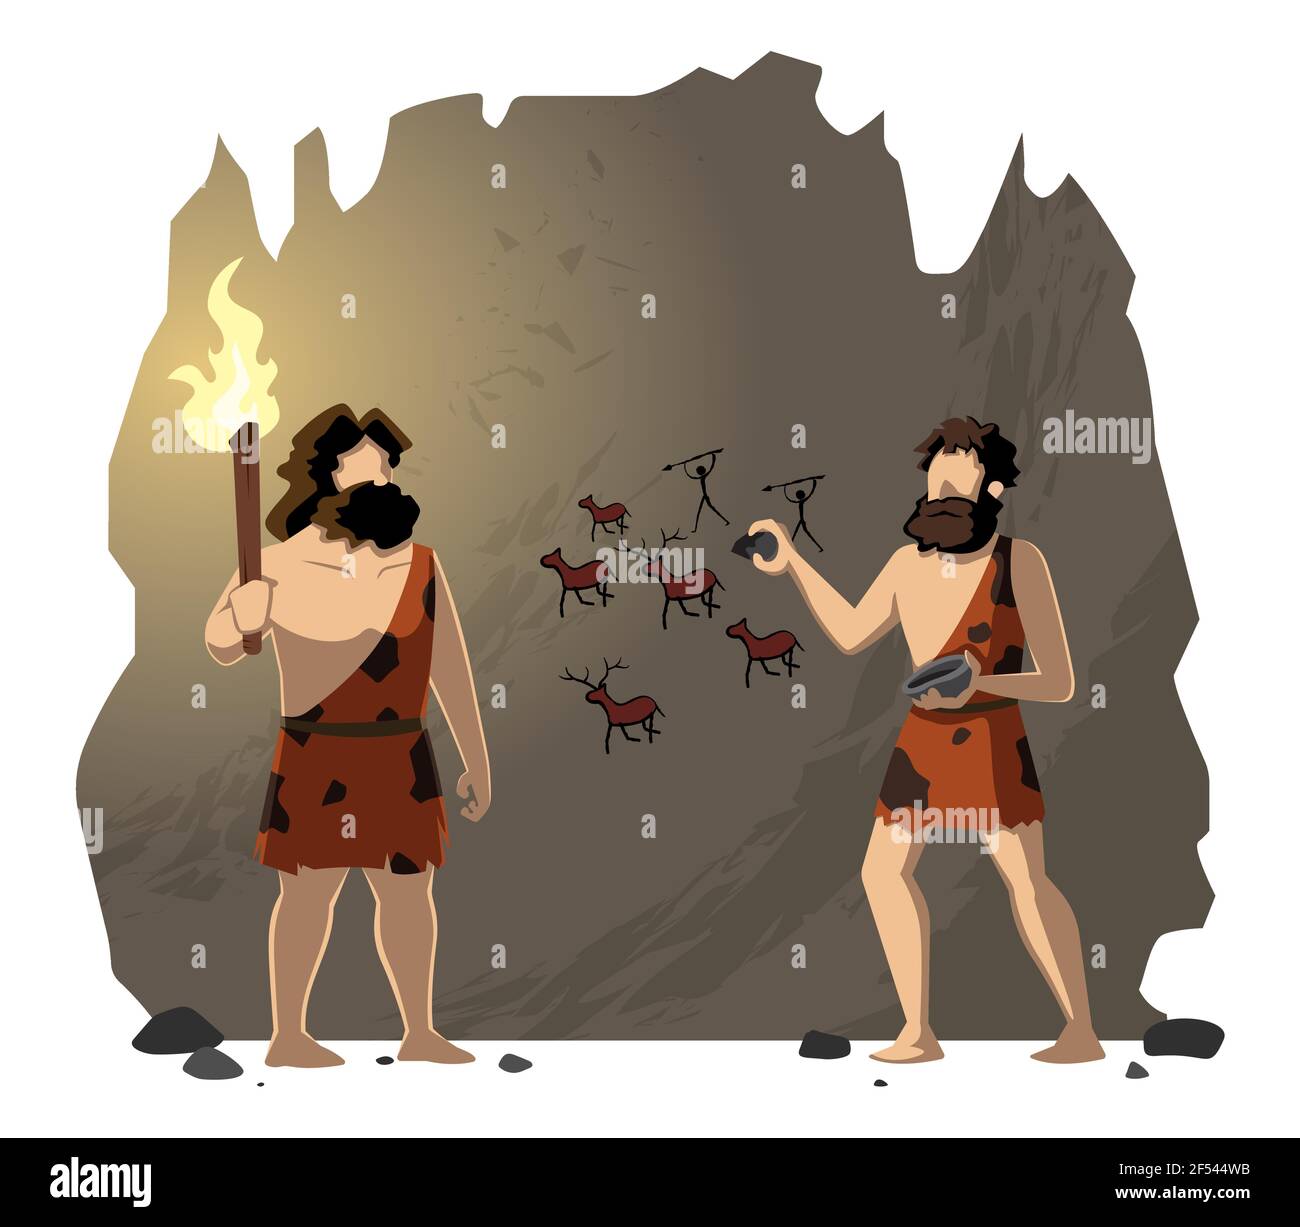 caveman cartoon drawings